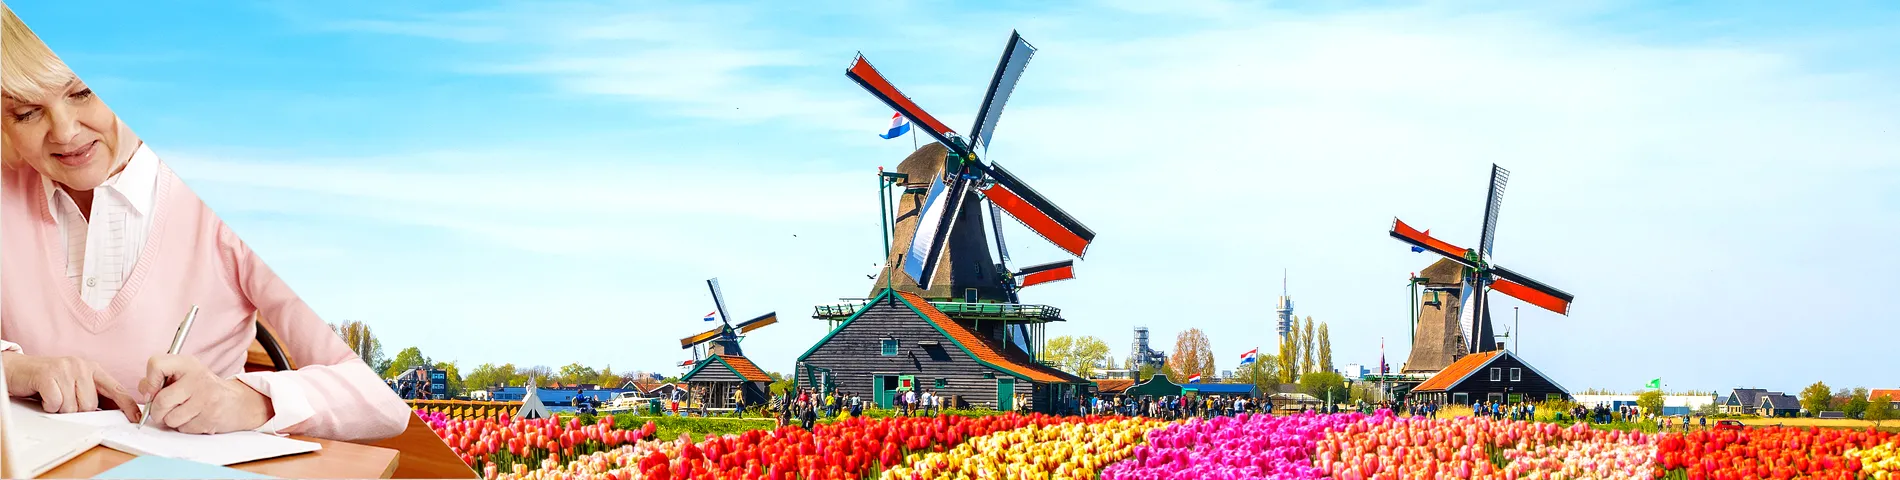 Paesi Bassi - Olandese per Senior (+50 anni)